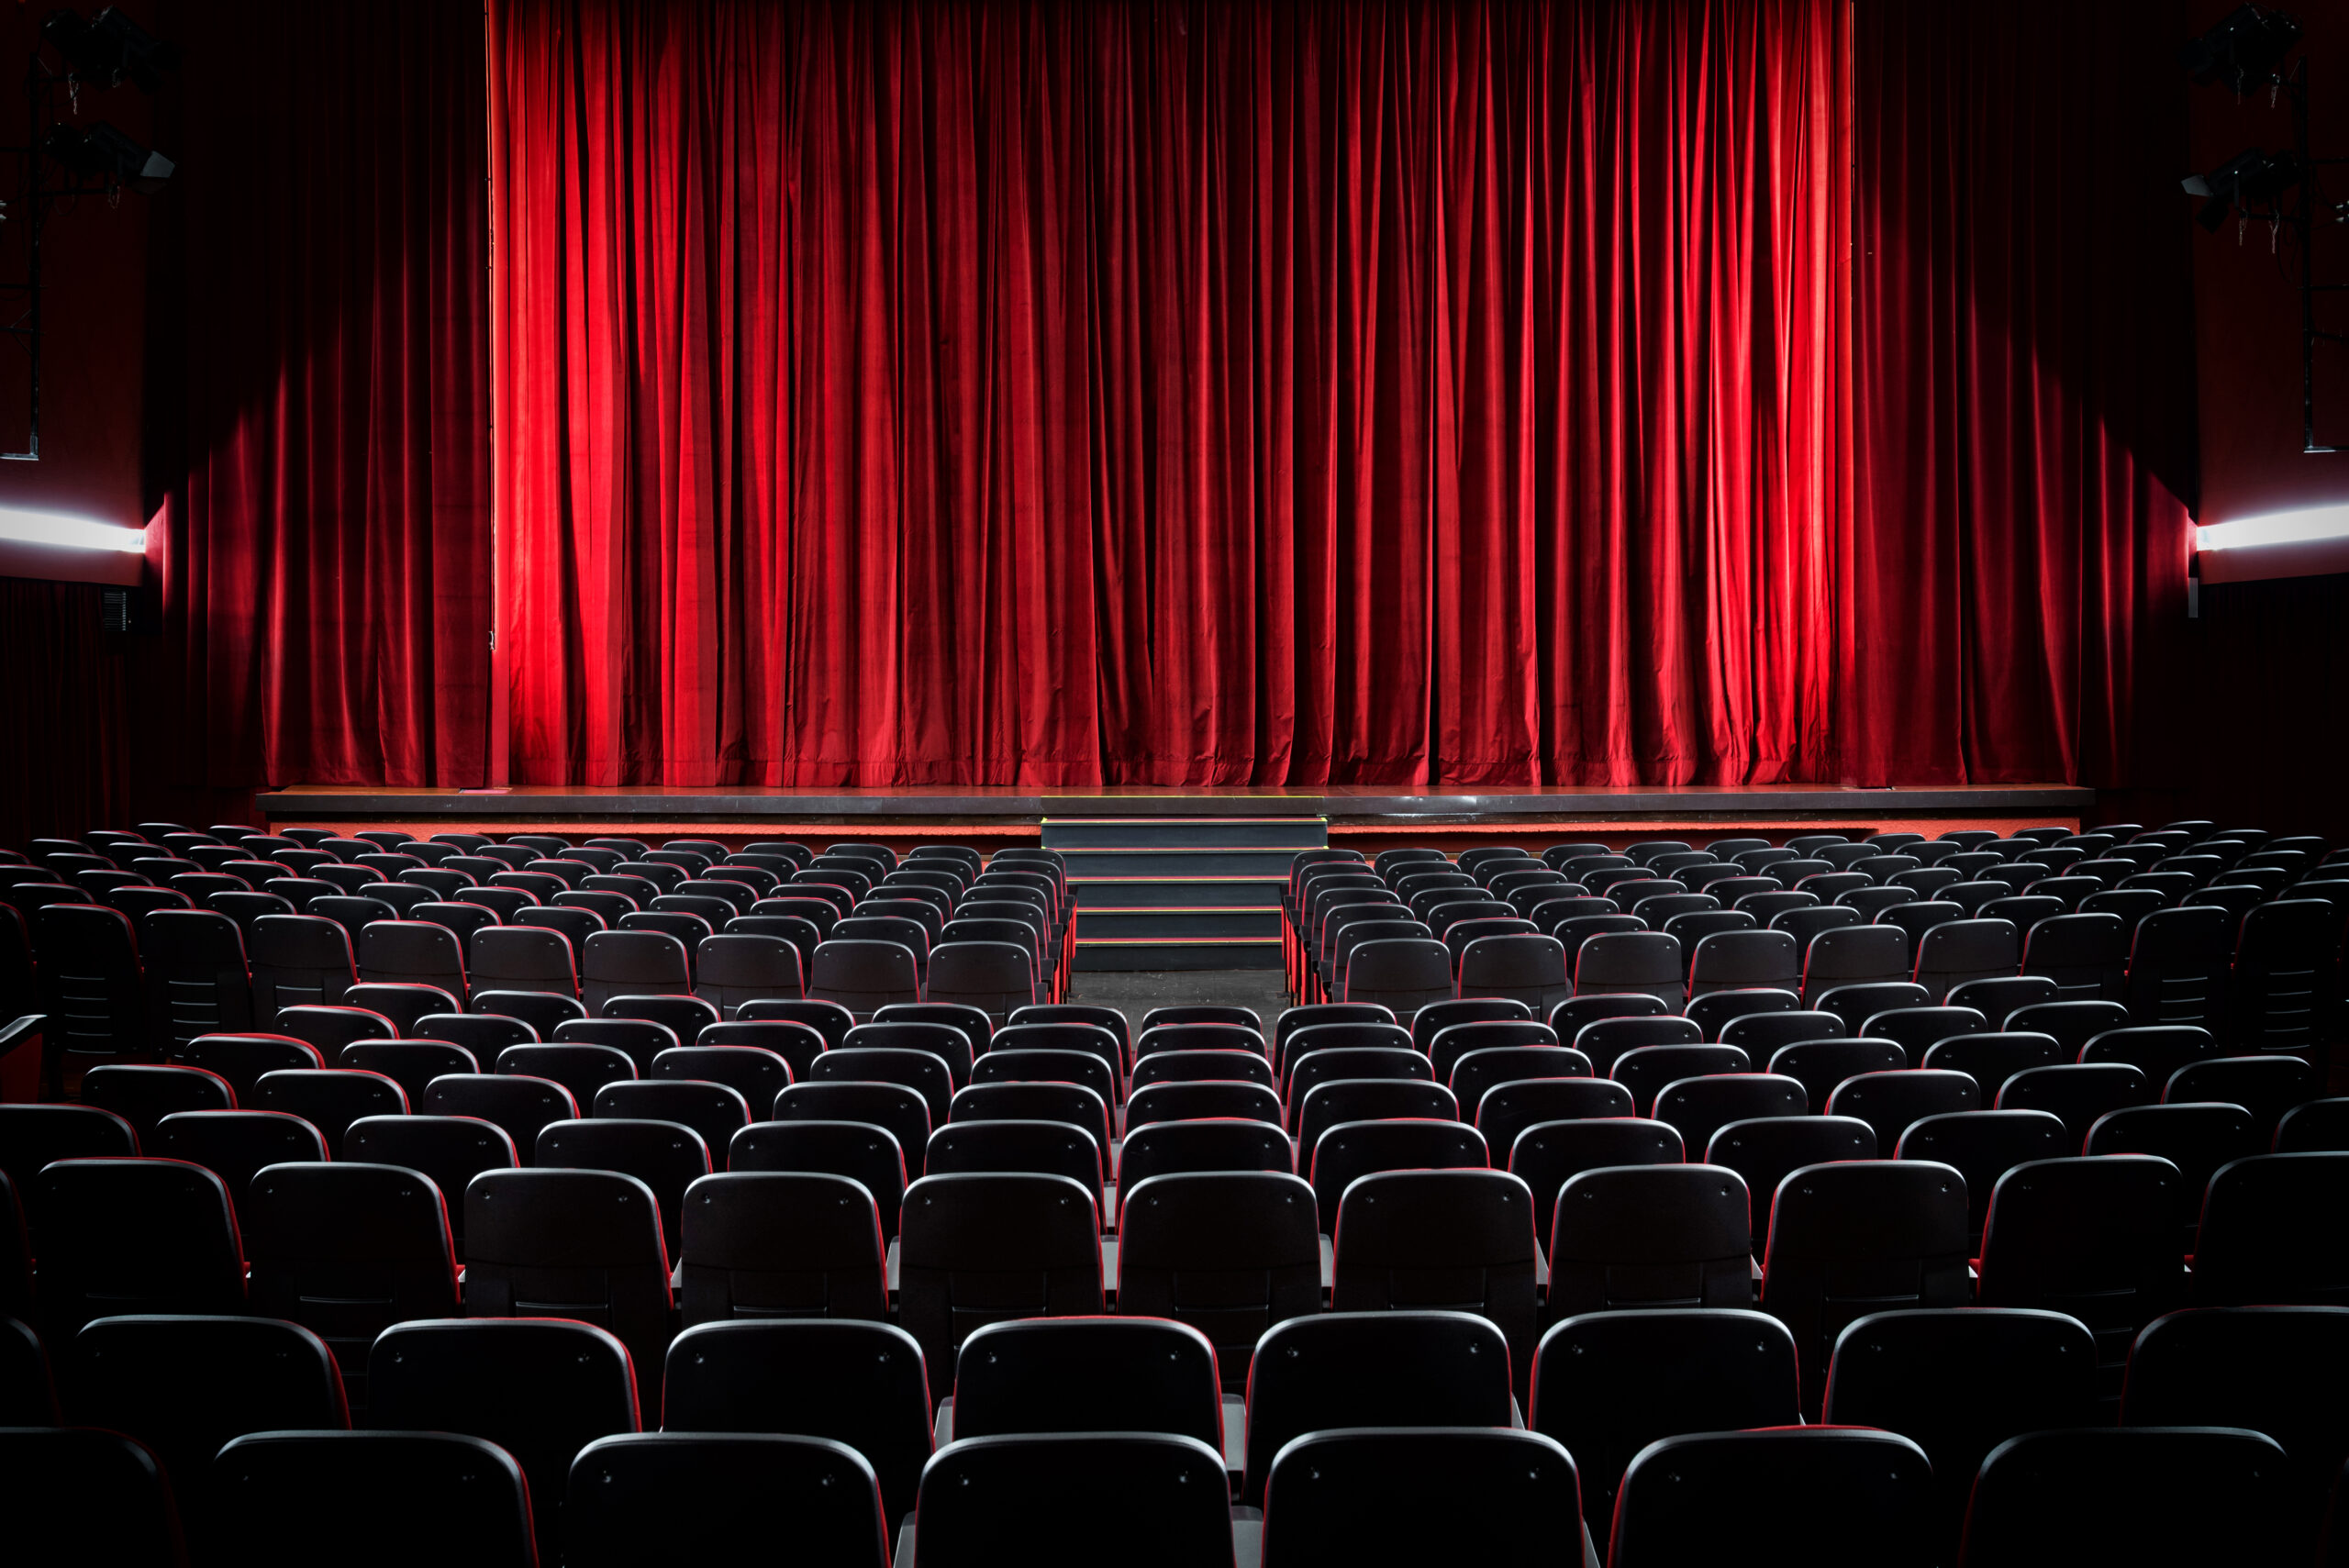 Zdjęcie czerwonej kurtyny w teatrze oraz kilku rzedow foteli na widowni.